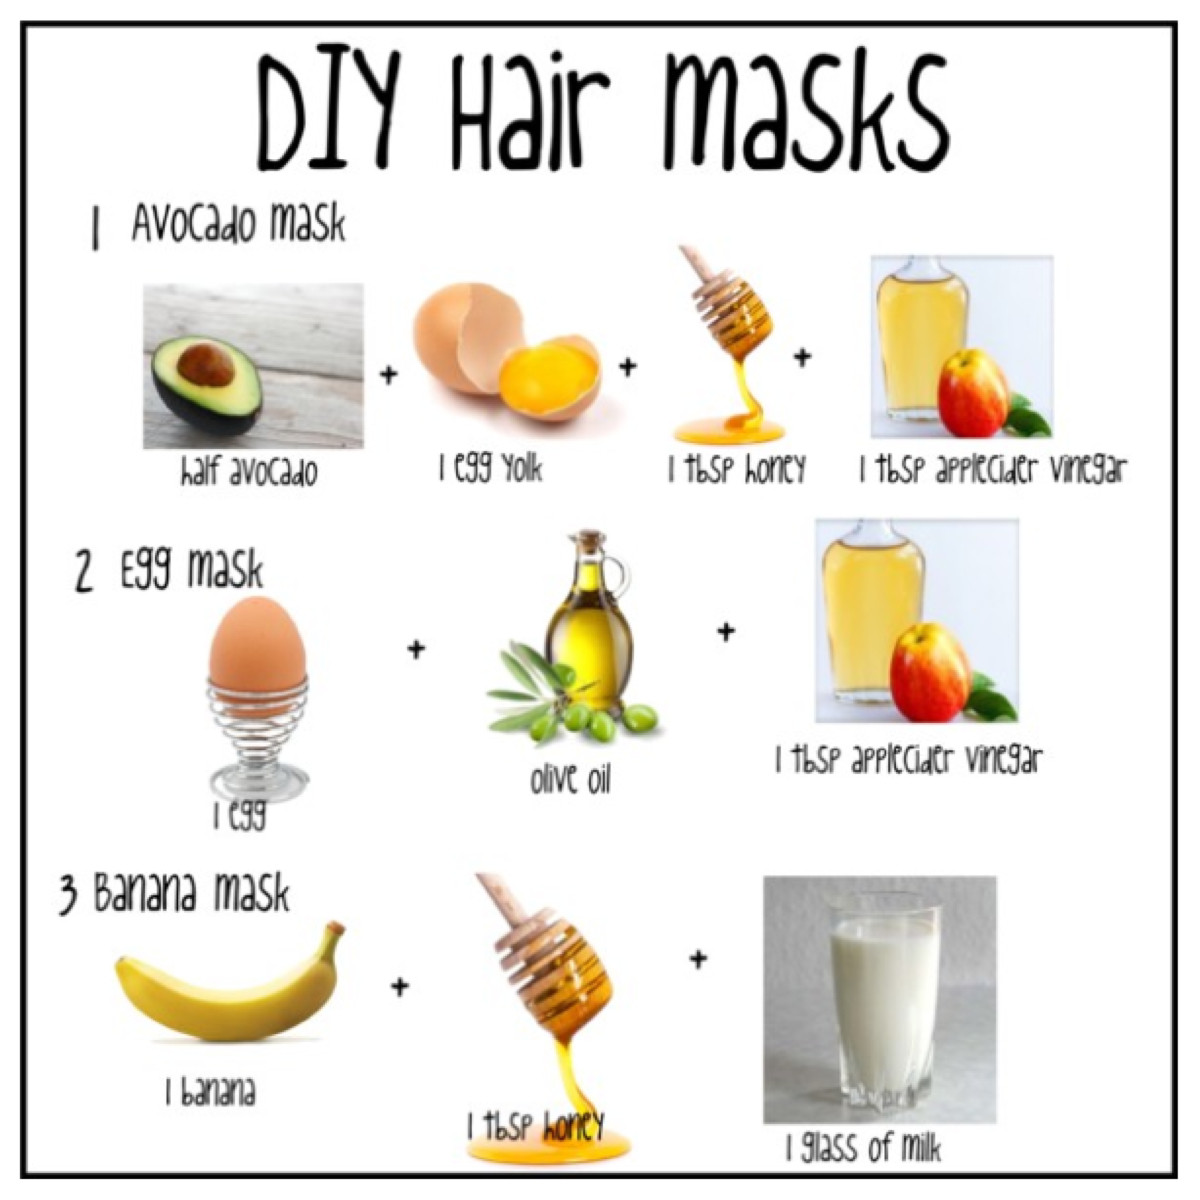 Hair Mask DIY
 DIY Hair Masks